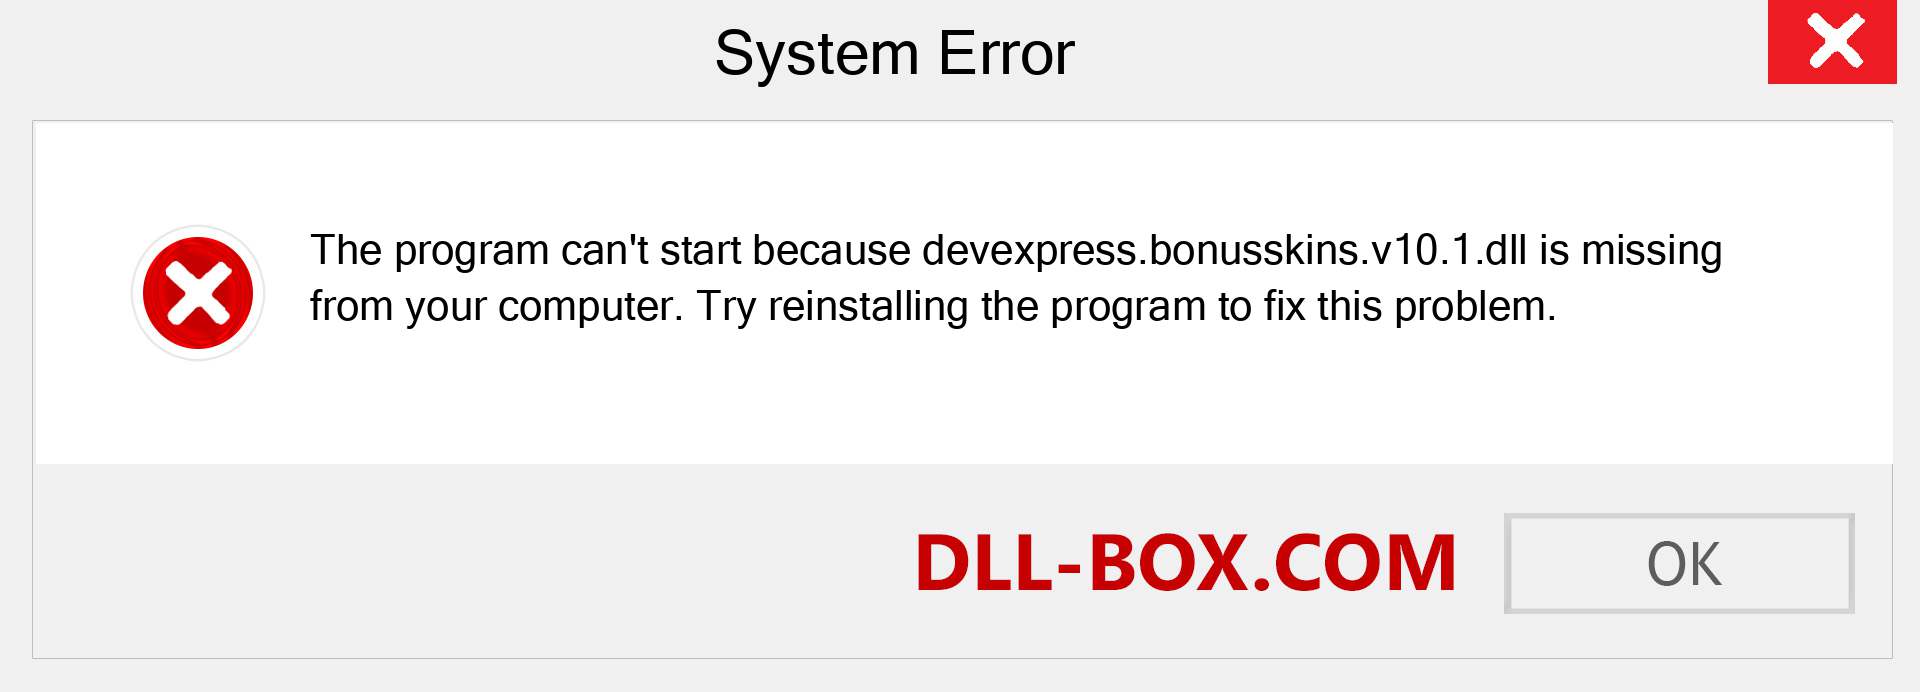  devexpress.bonusskins.v10.1.dll file is missing?. Download for Windows 7, 8, 10 - Fix  devexpress.bonusskins.v10.1 dll Missing Error on Windows, photos, images